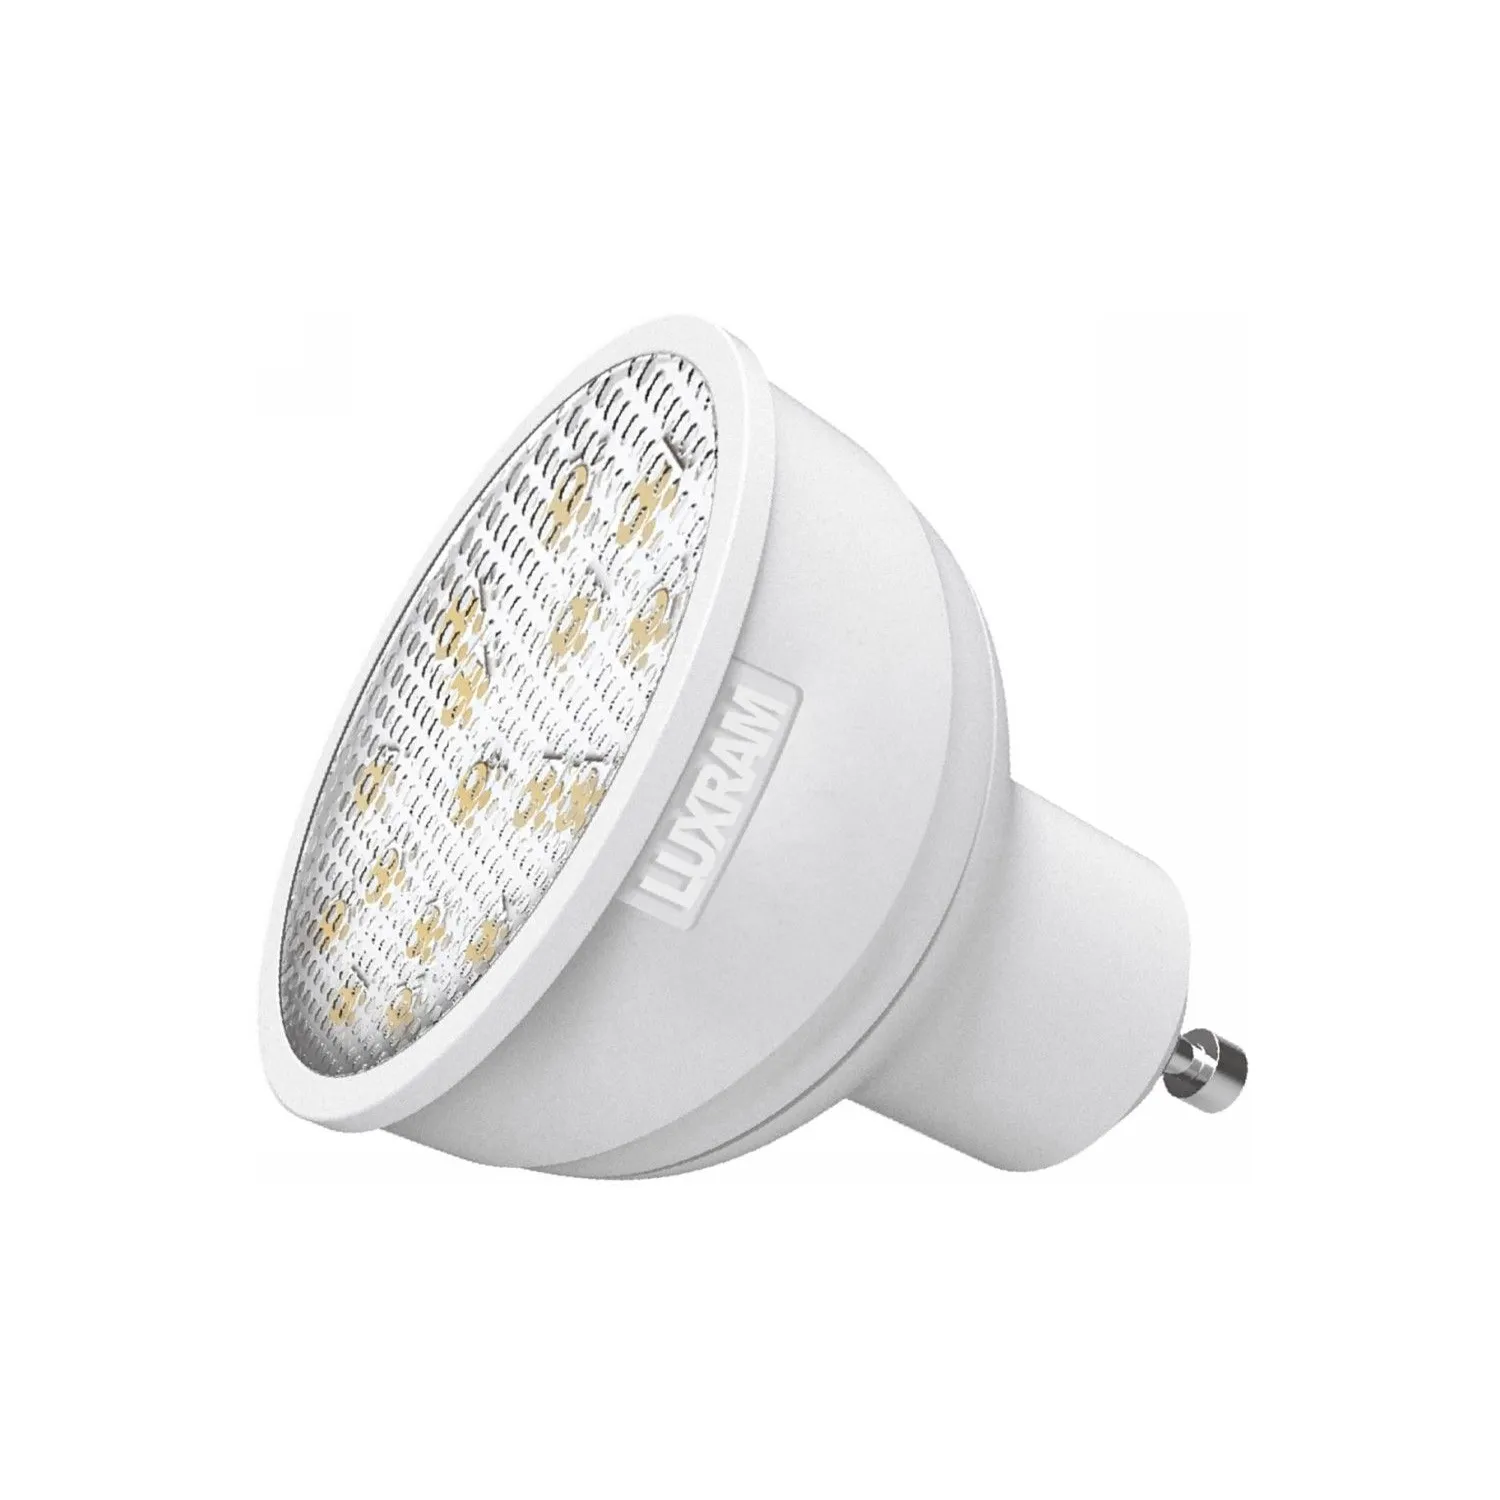 Curvodo LED GU10 5.5W Natural White 4000K 485lm (White) (1 1)